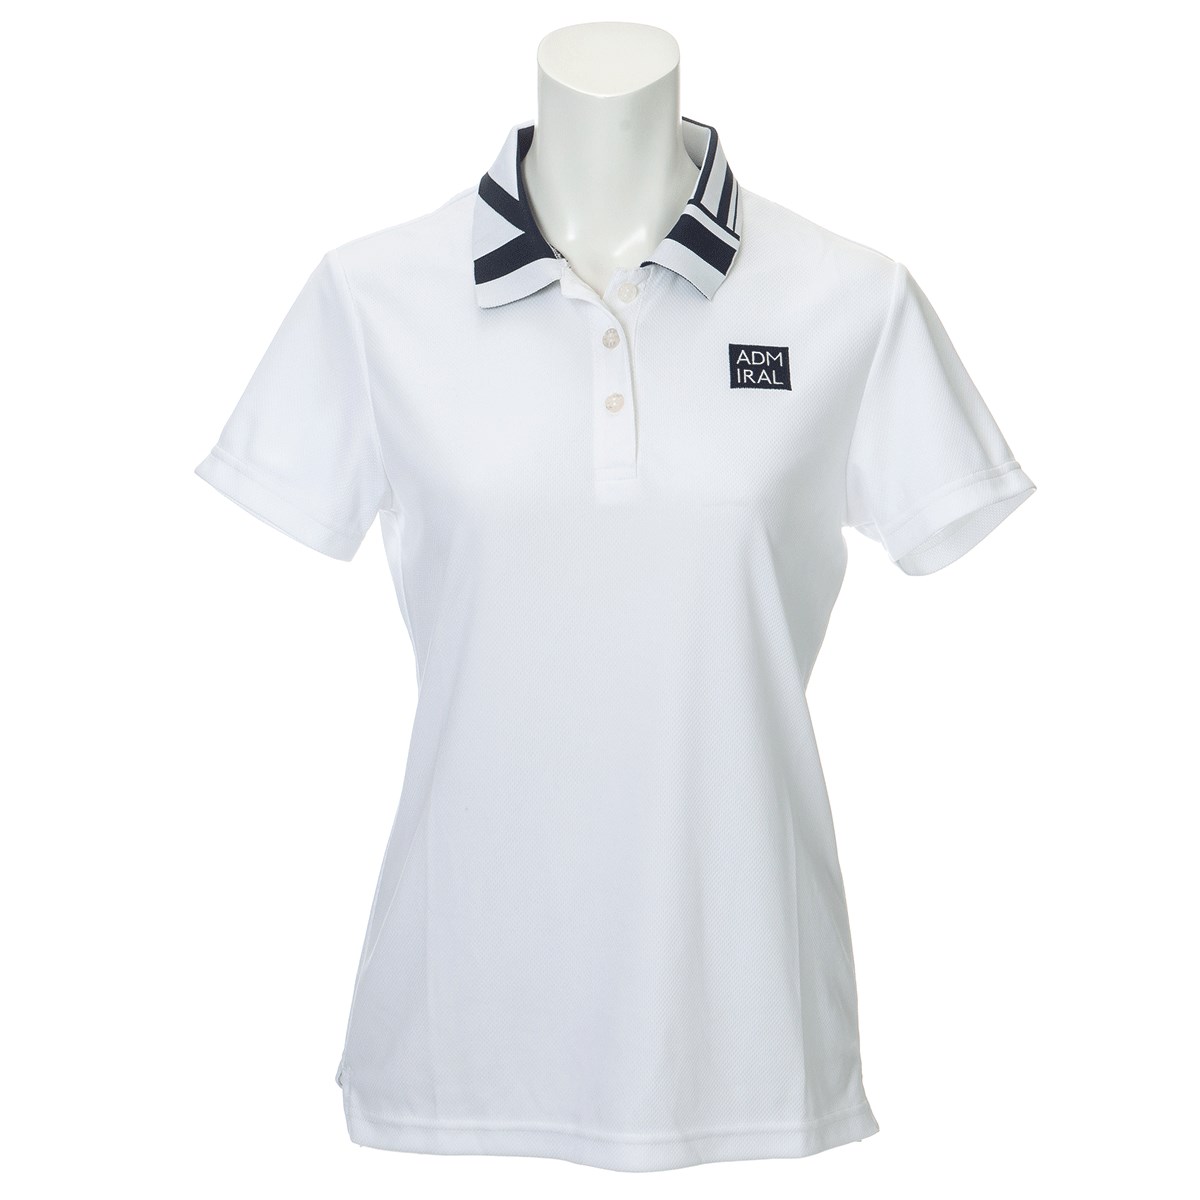 ゴルフウェア ポロシャツ アドミラル レディース - ゴルフウェアの人気 